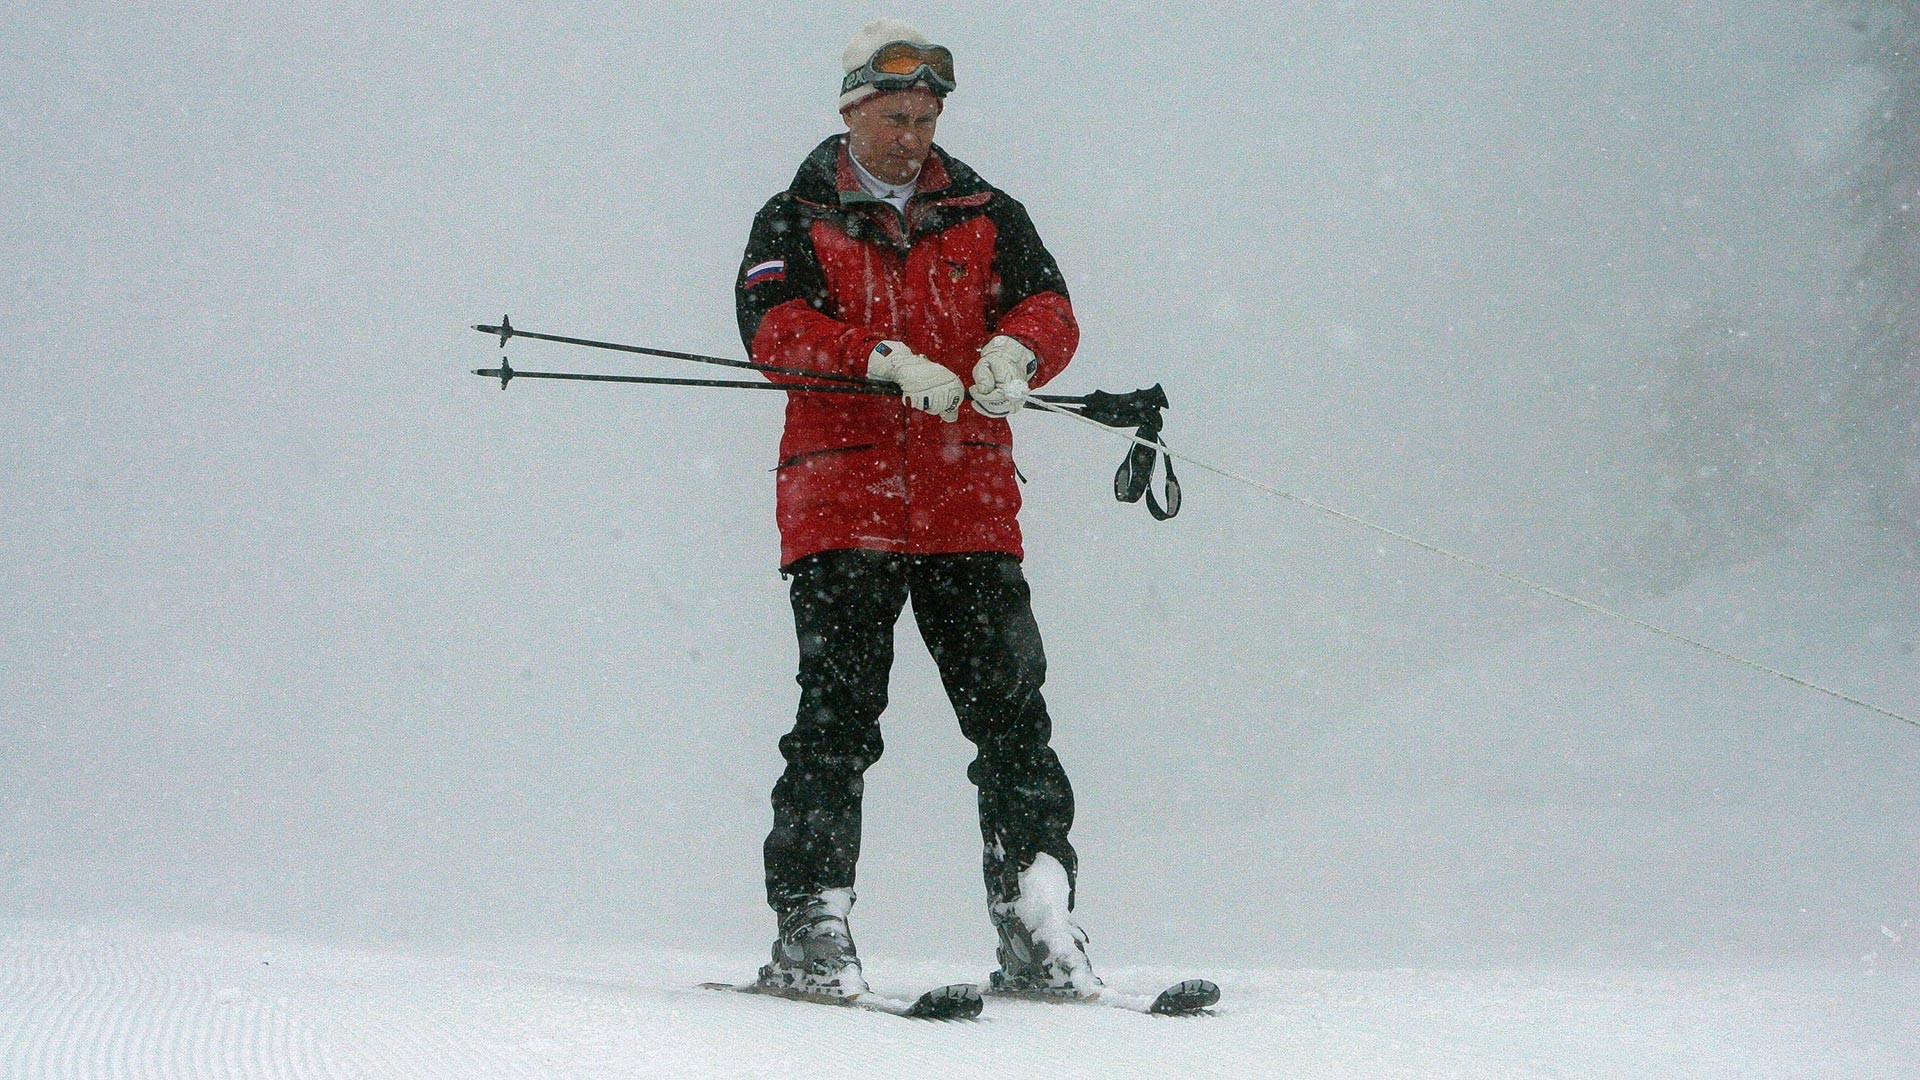 Putin durante visita a complexo turístico na estação de esqui de Krasnaia Poliana

